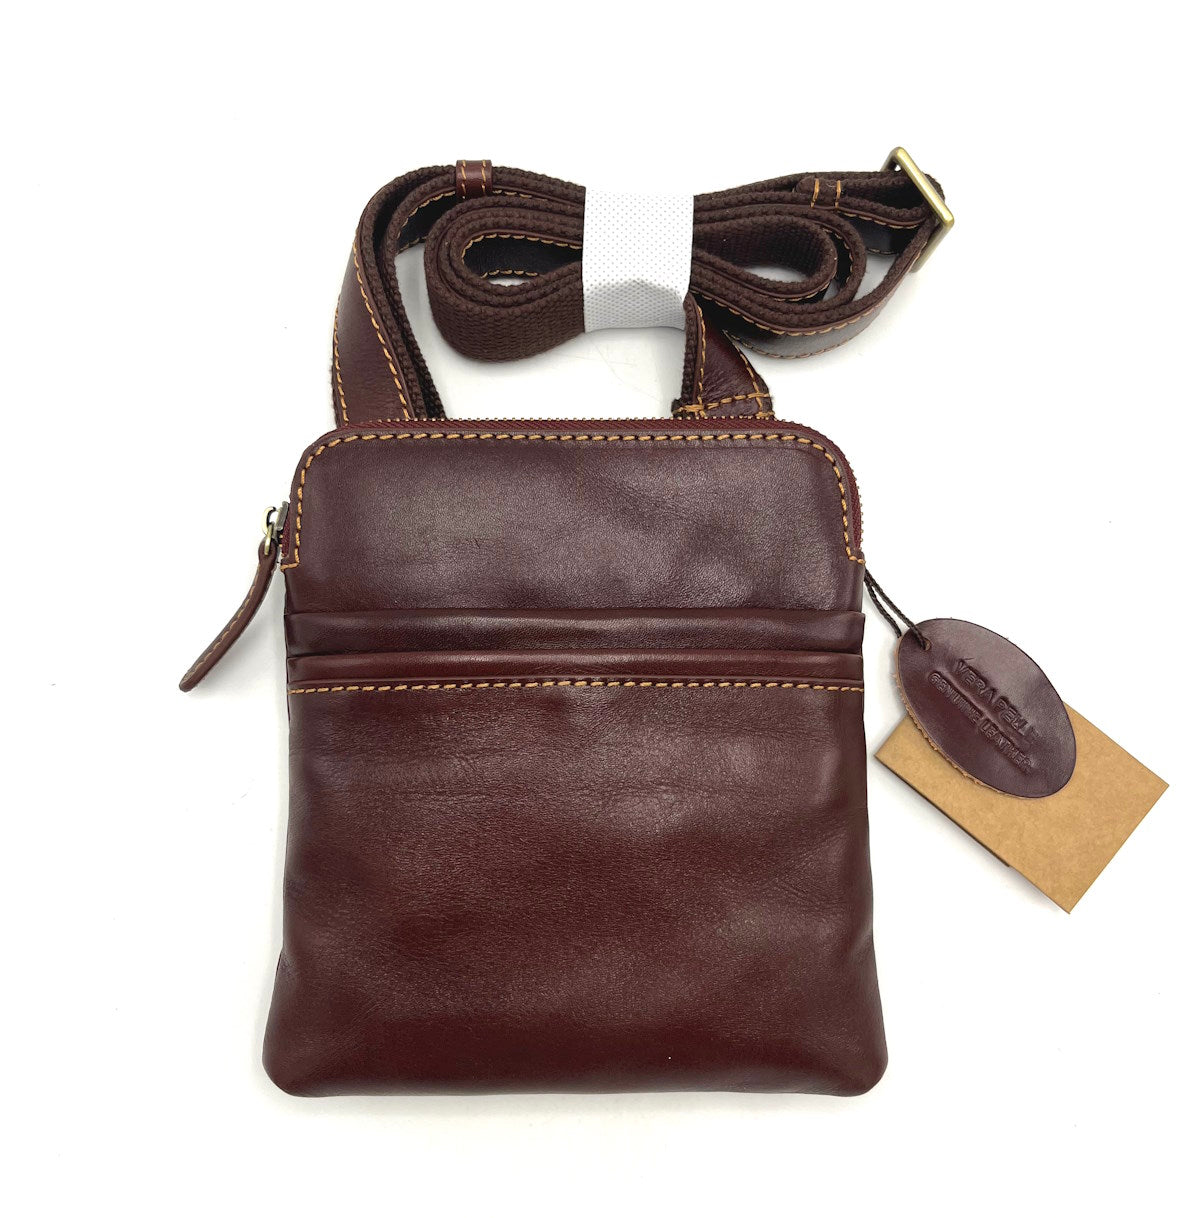 Buffered leather shoulder bag, for men, art. TA4806